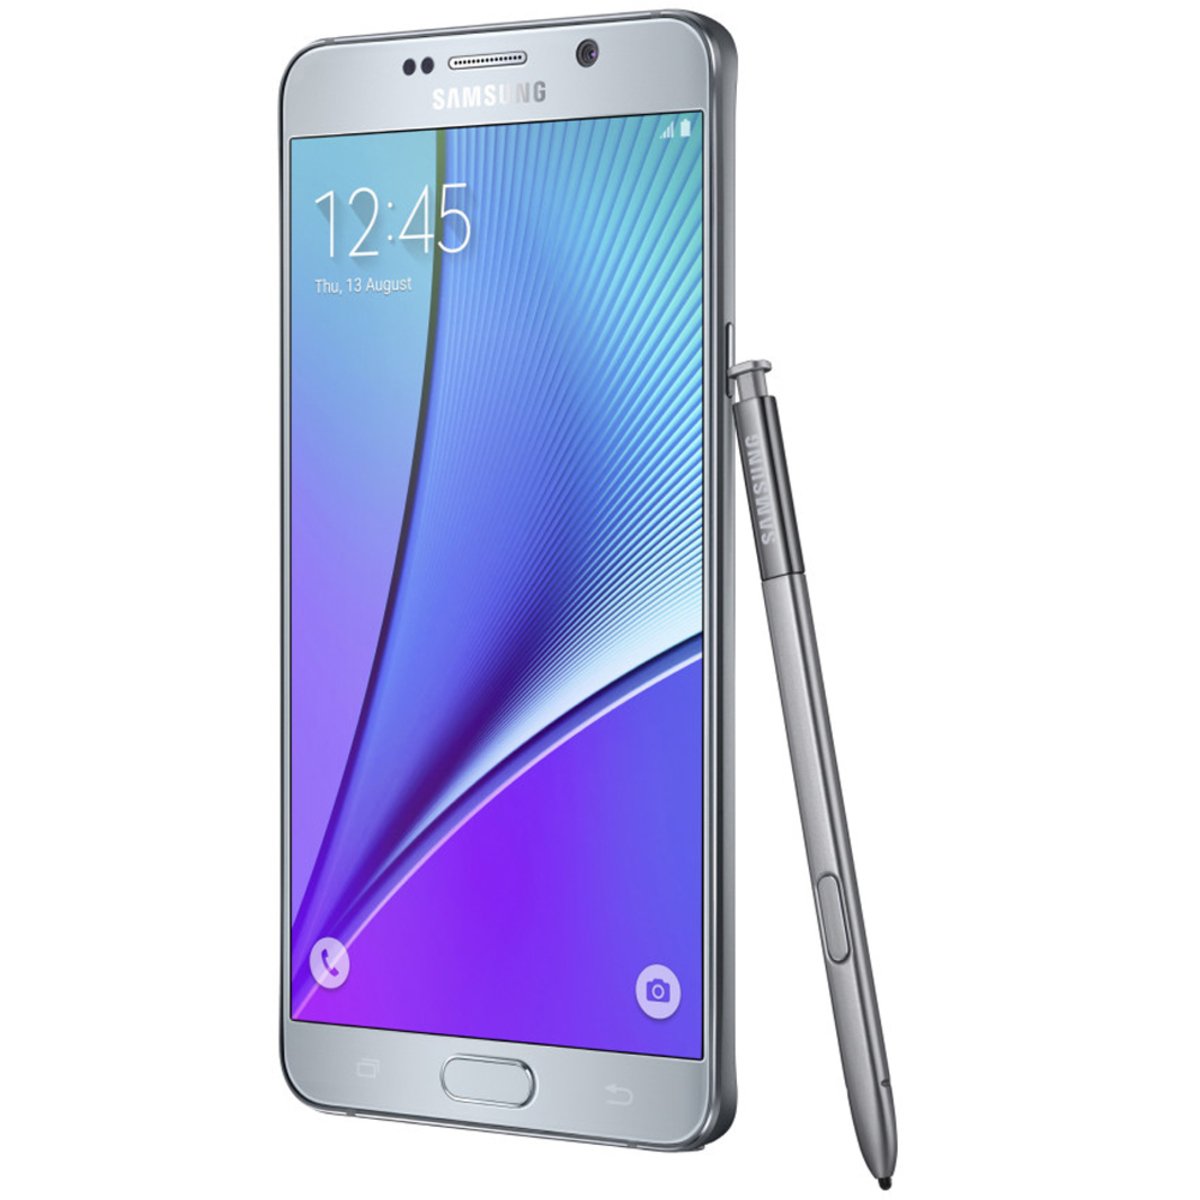 Samsung Galaxy Note 5 SM-N920C 32GB Smartphone N920C-32GB-GLD